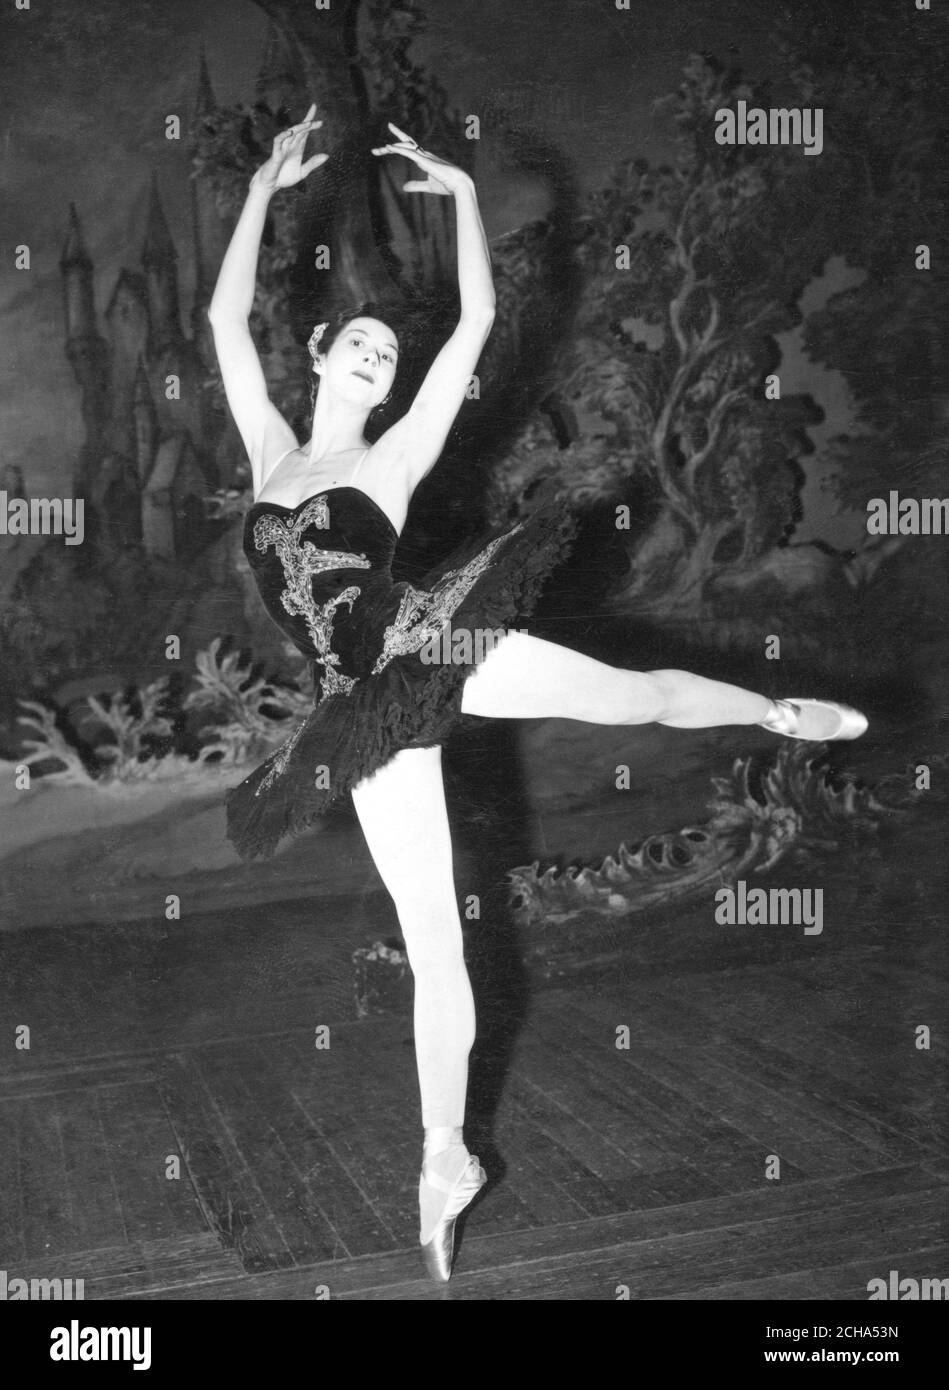 Ballerina Beryl Gray tanzt die Rolle der Idylle im Schwanensee in Covent Garden, dem Ballett, in dem sie Ende dieses Monats vor dem König und der Königin von Schweden in Stockholm auftreten wird. Beryl ist mit dem schwedischen Osteopathen Dr. Sven Svenson verheiratet und wird in Stockholm mit dem Königlich Schwedischen Ballett auftreten. Stockfoto